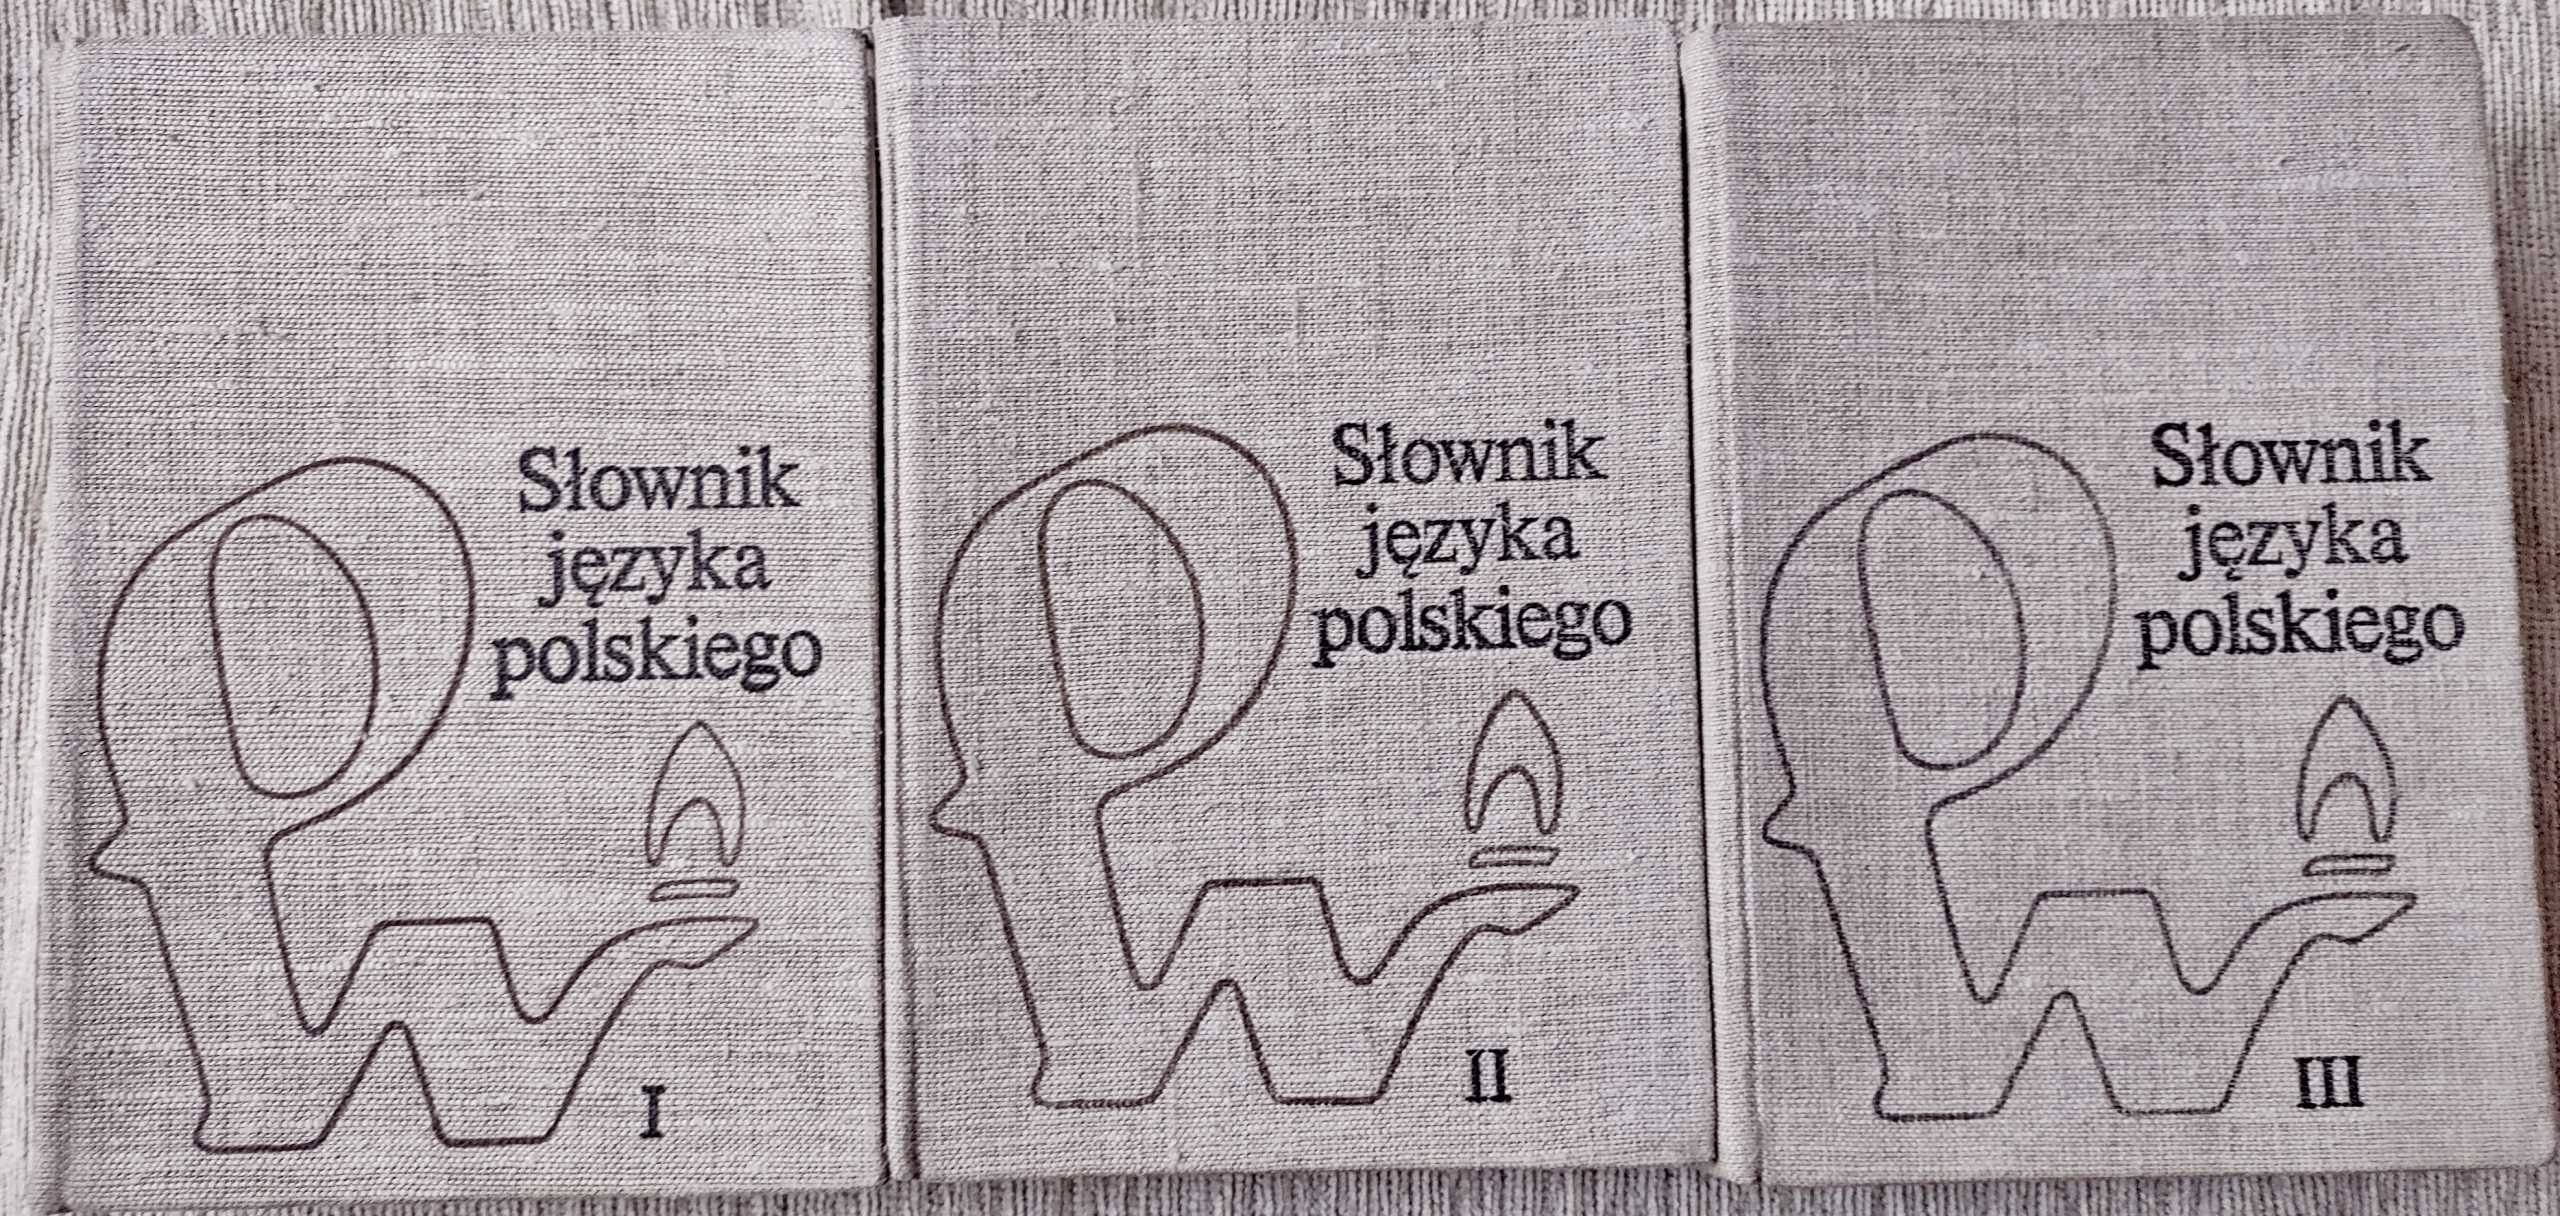 Słownik języka polskiego tom 1-3 PWN 1985, stan bdb+